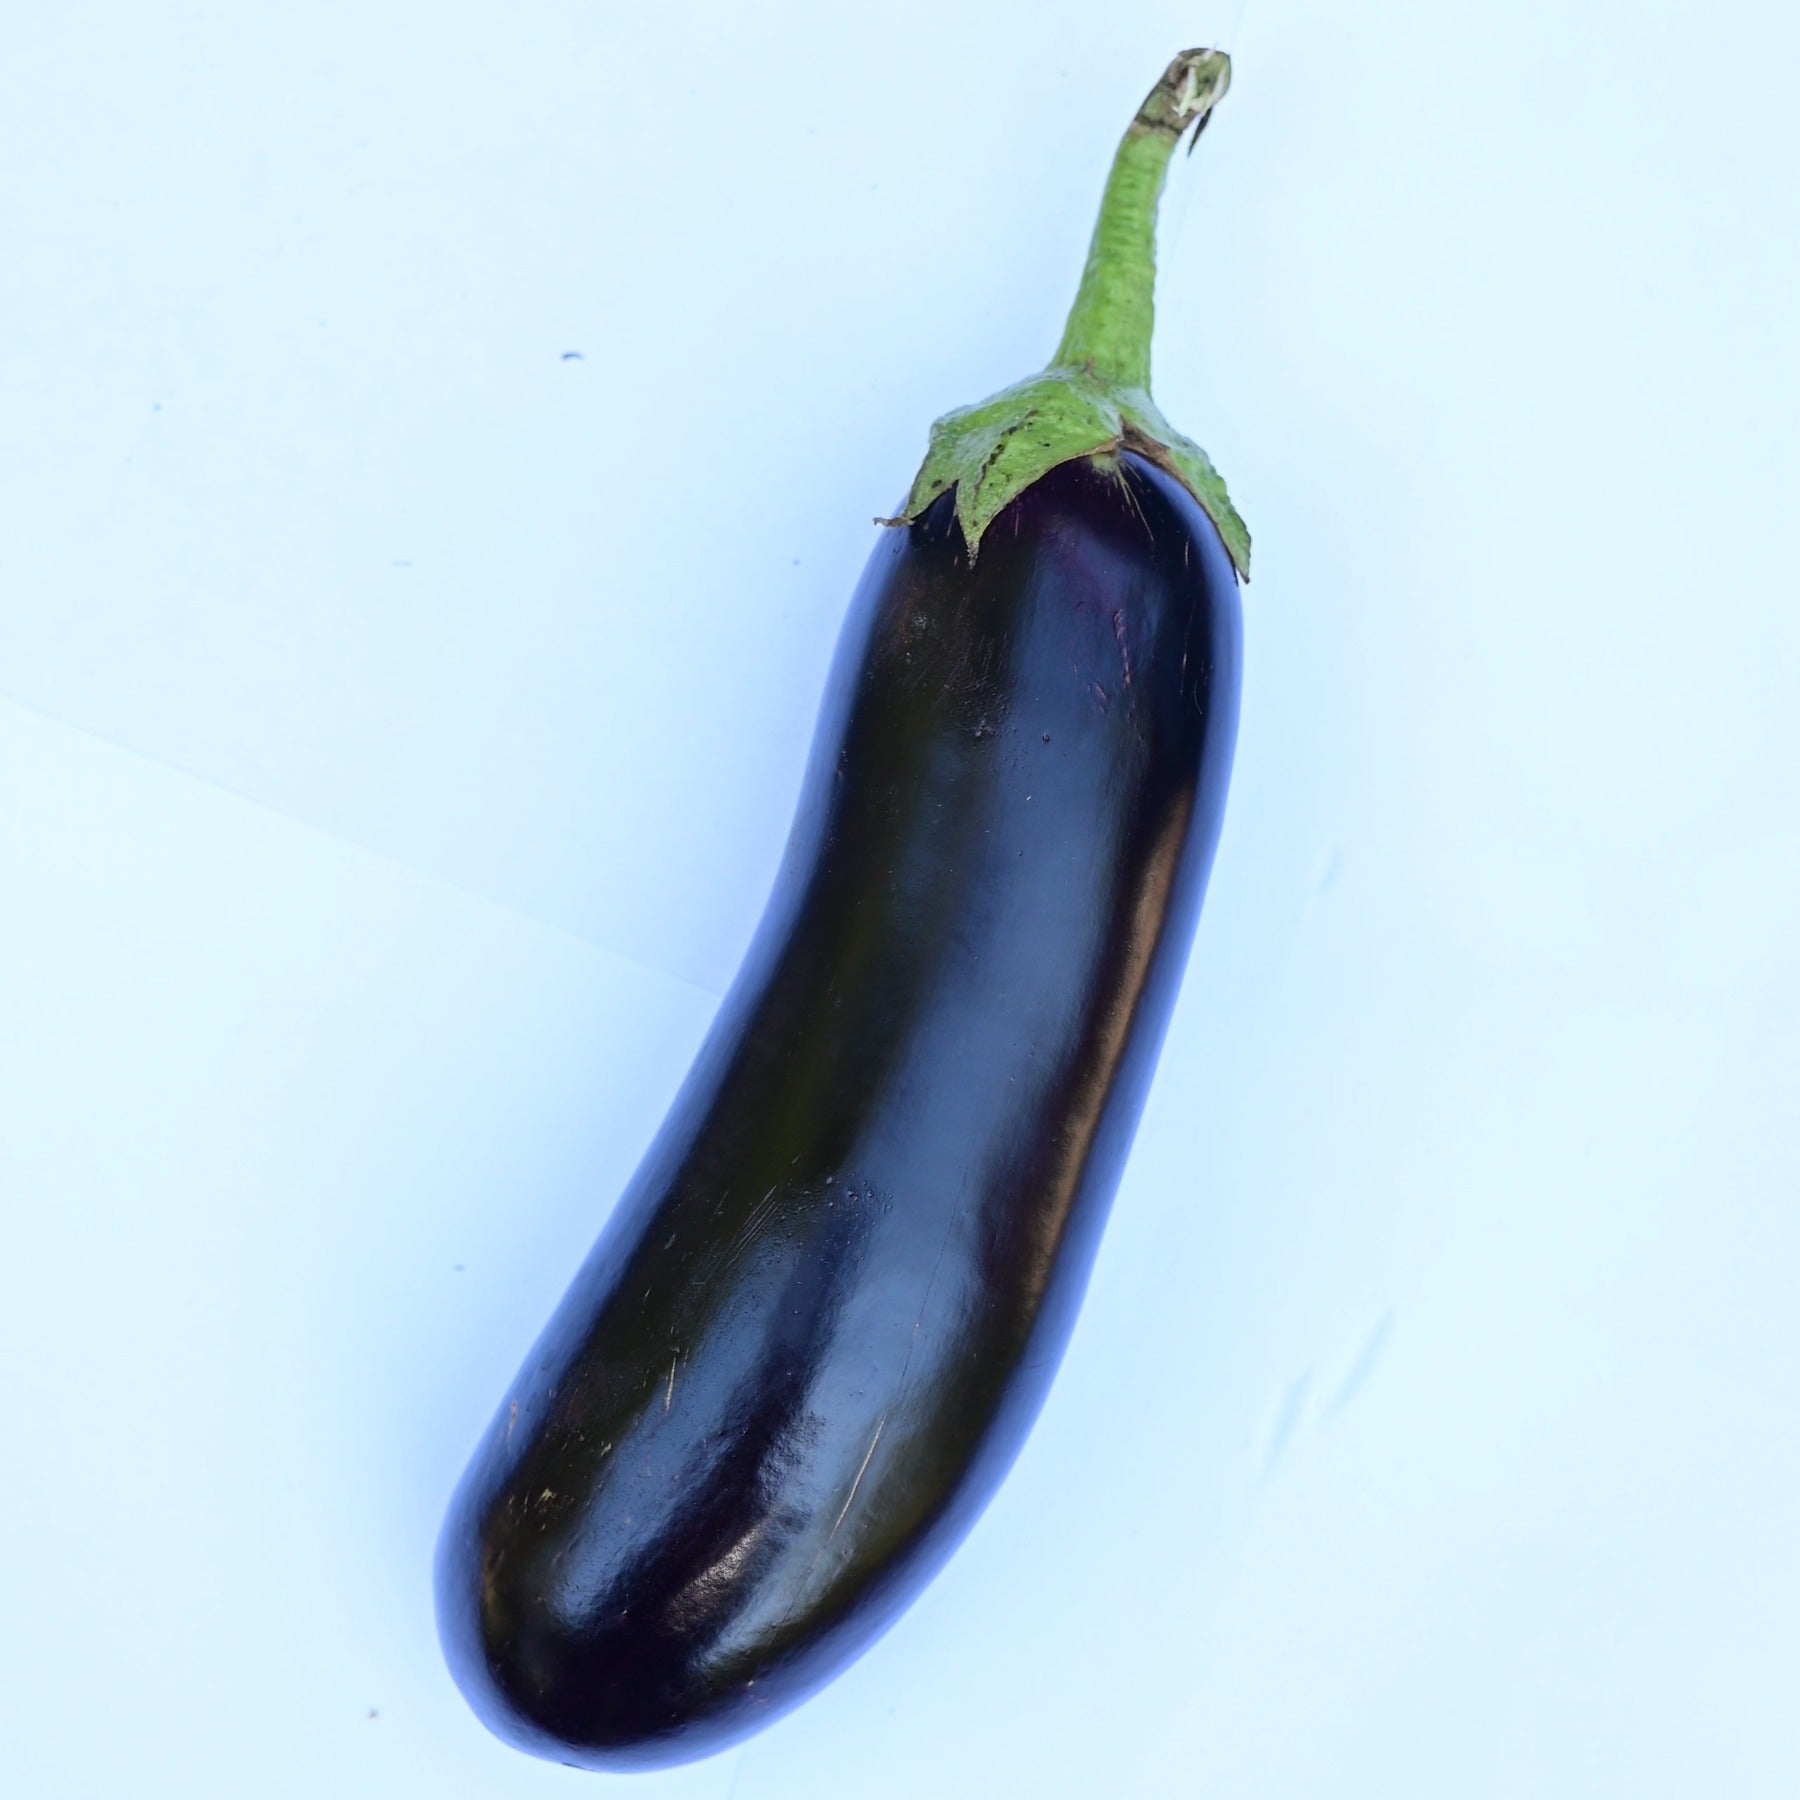 Diamond Purple Heirloom Eggplant